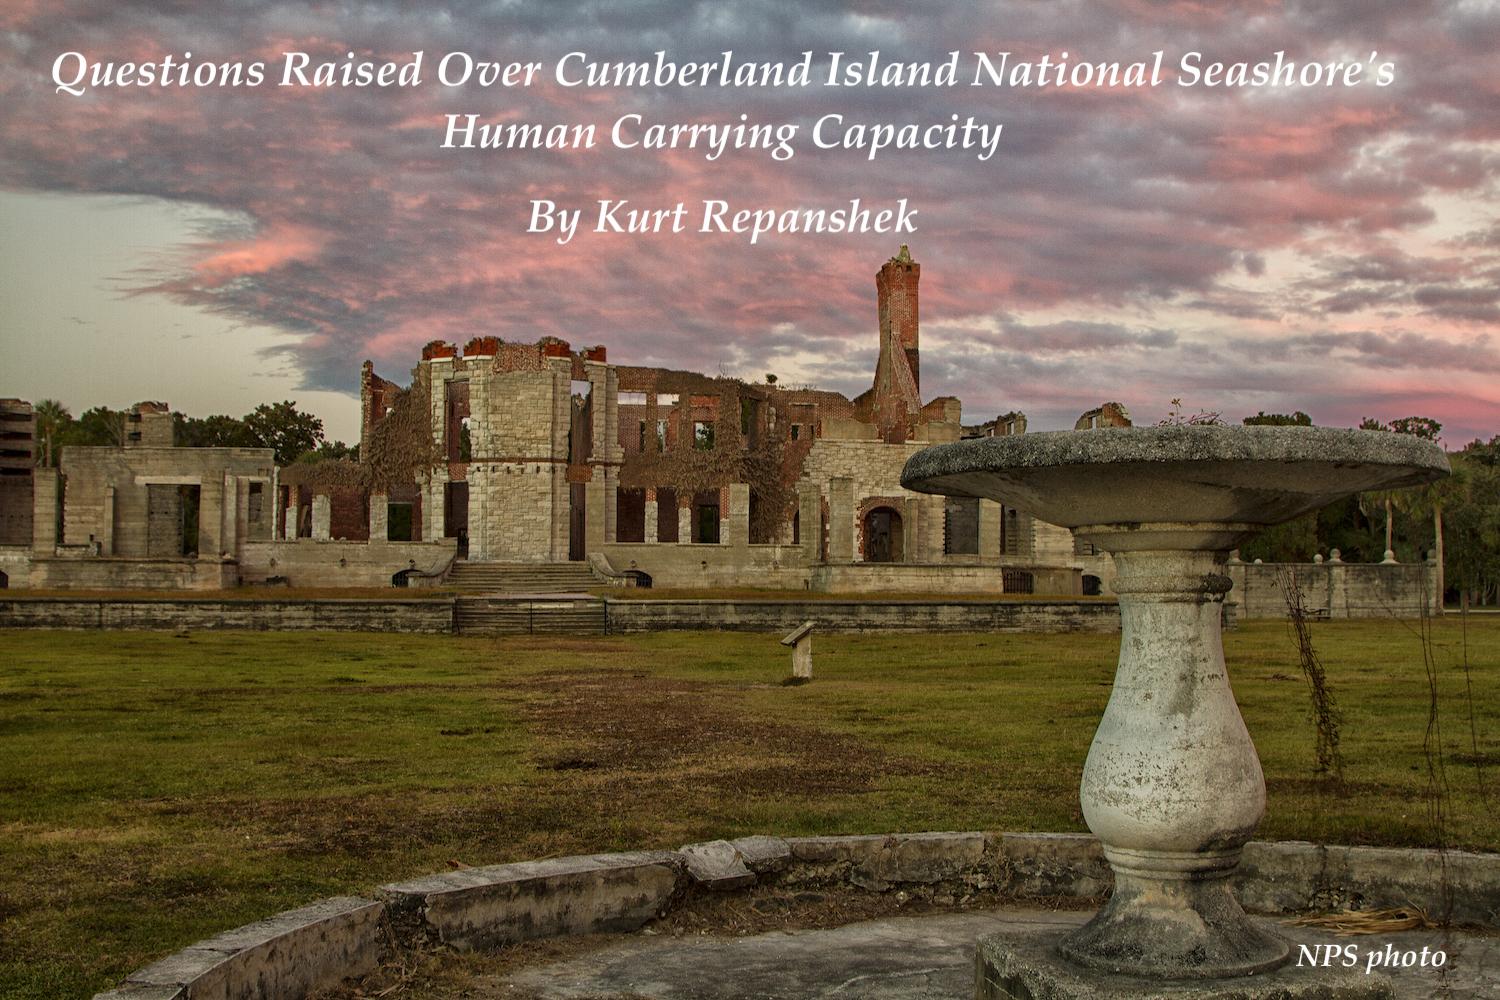 Should Cumberland Island National Seashore double visitation levels?